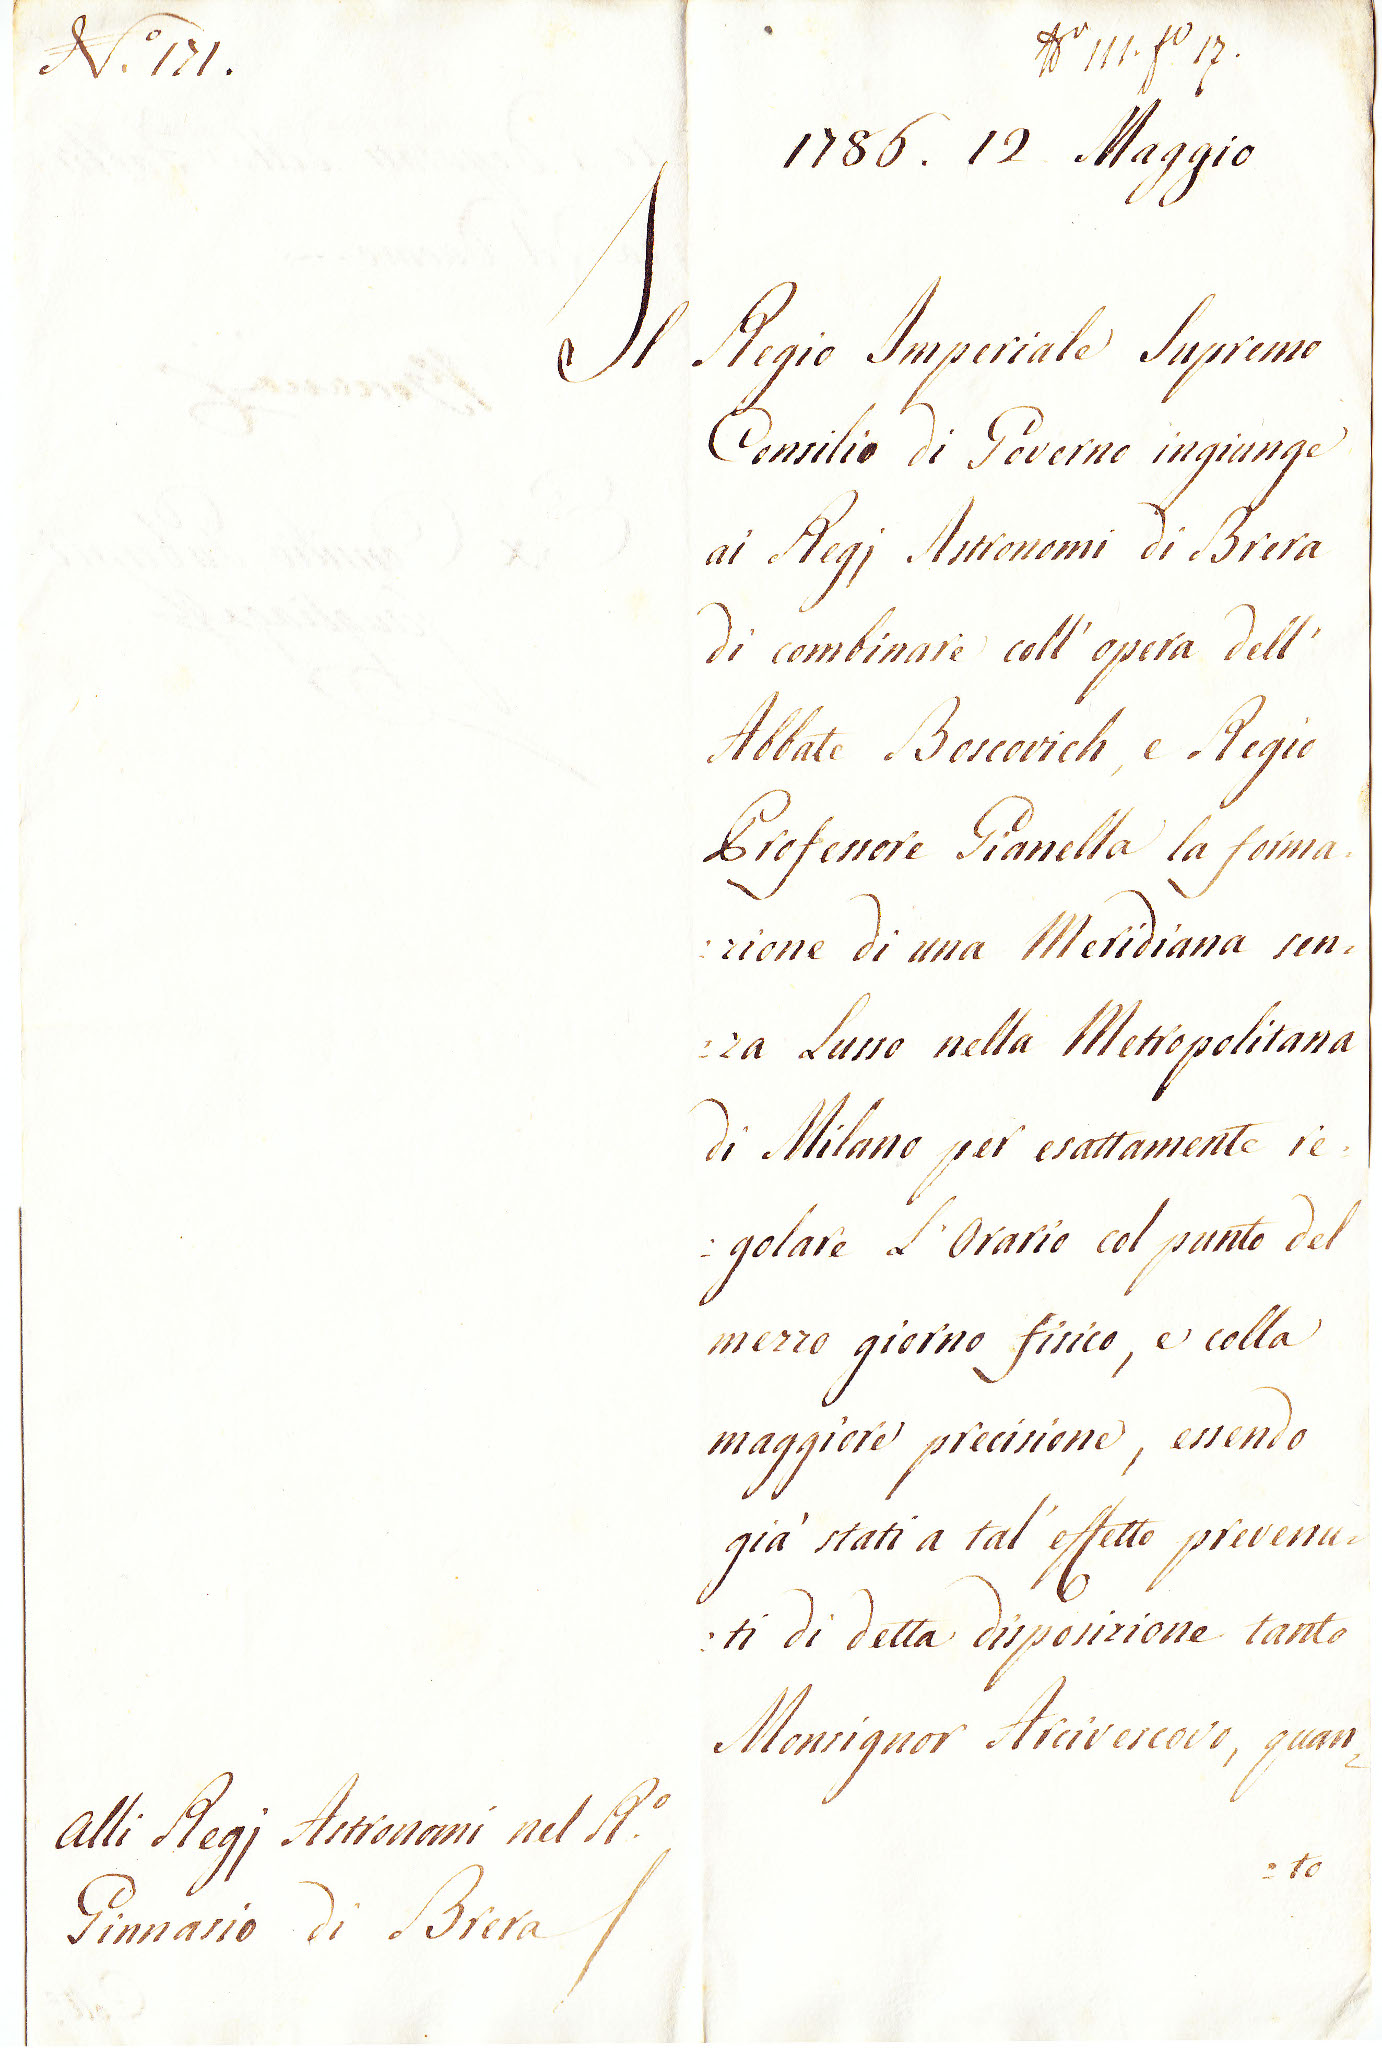 Lettera di incarico per la costruzione della meridiana del Duomo